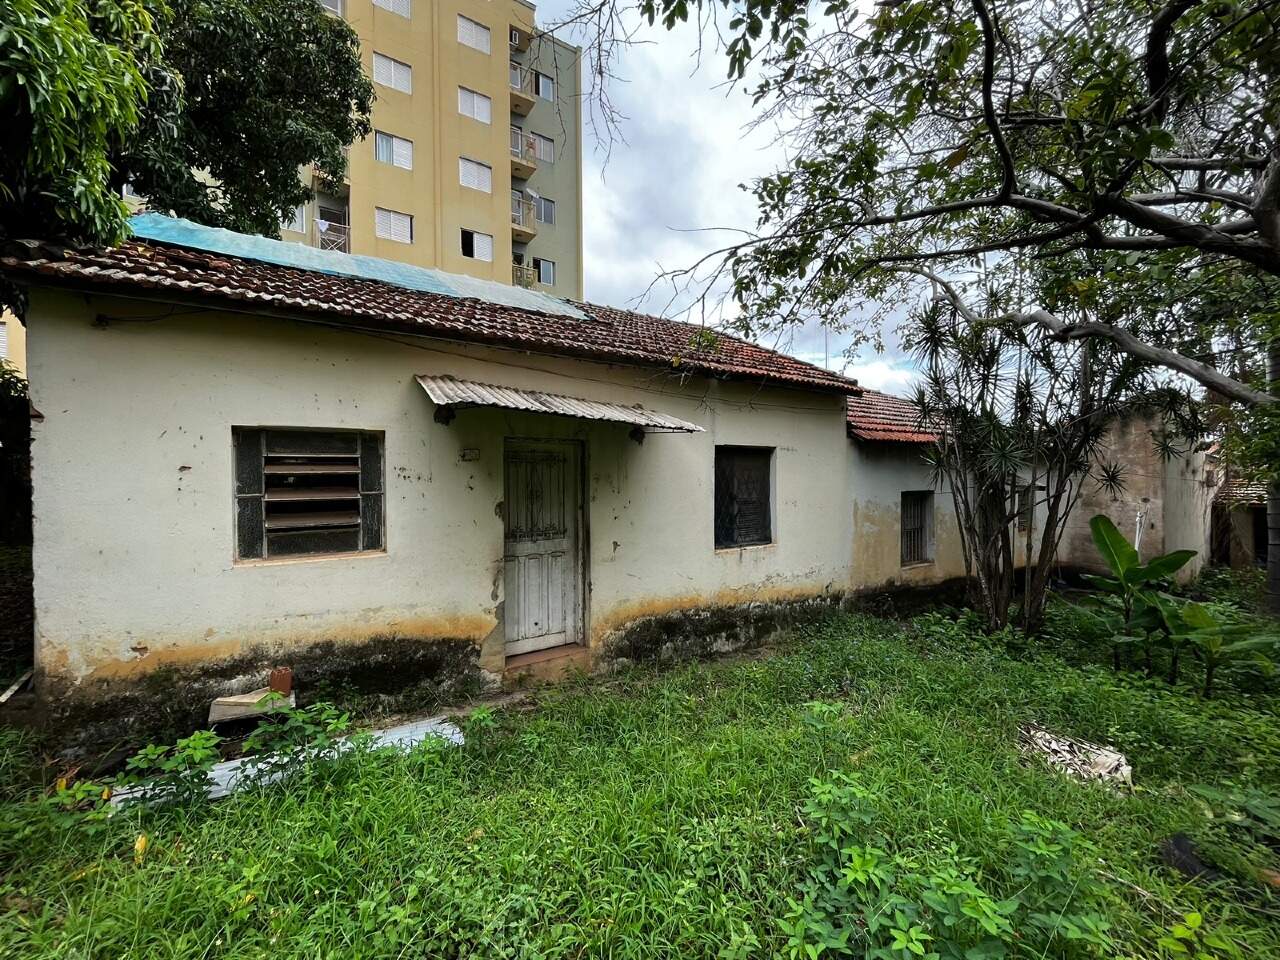 Área à venda, no bairro Cidade Alta em Piracicaba - SP